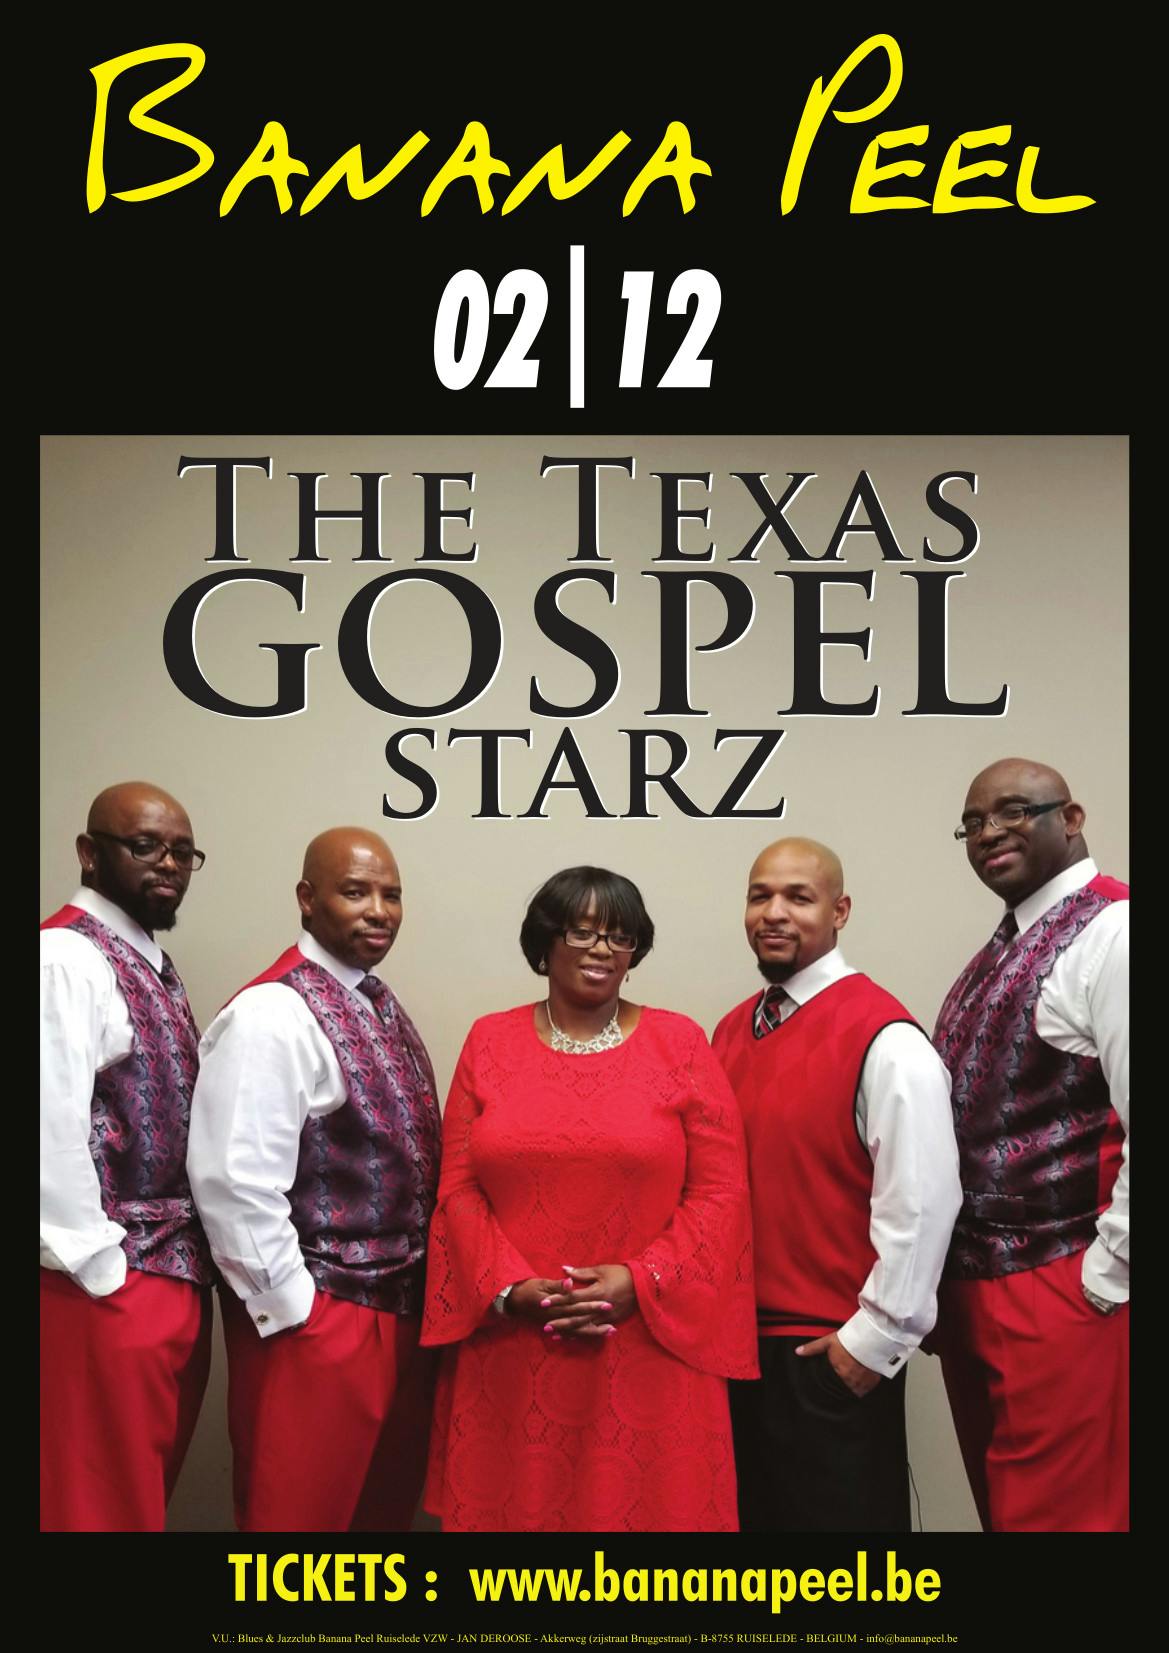 The Texas Gospel Starz